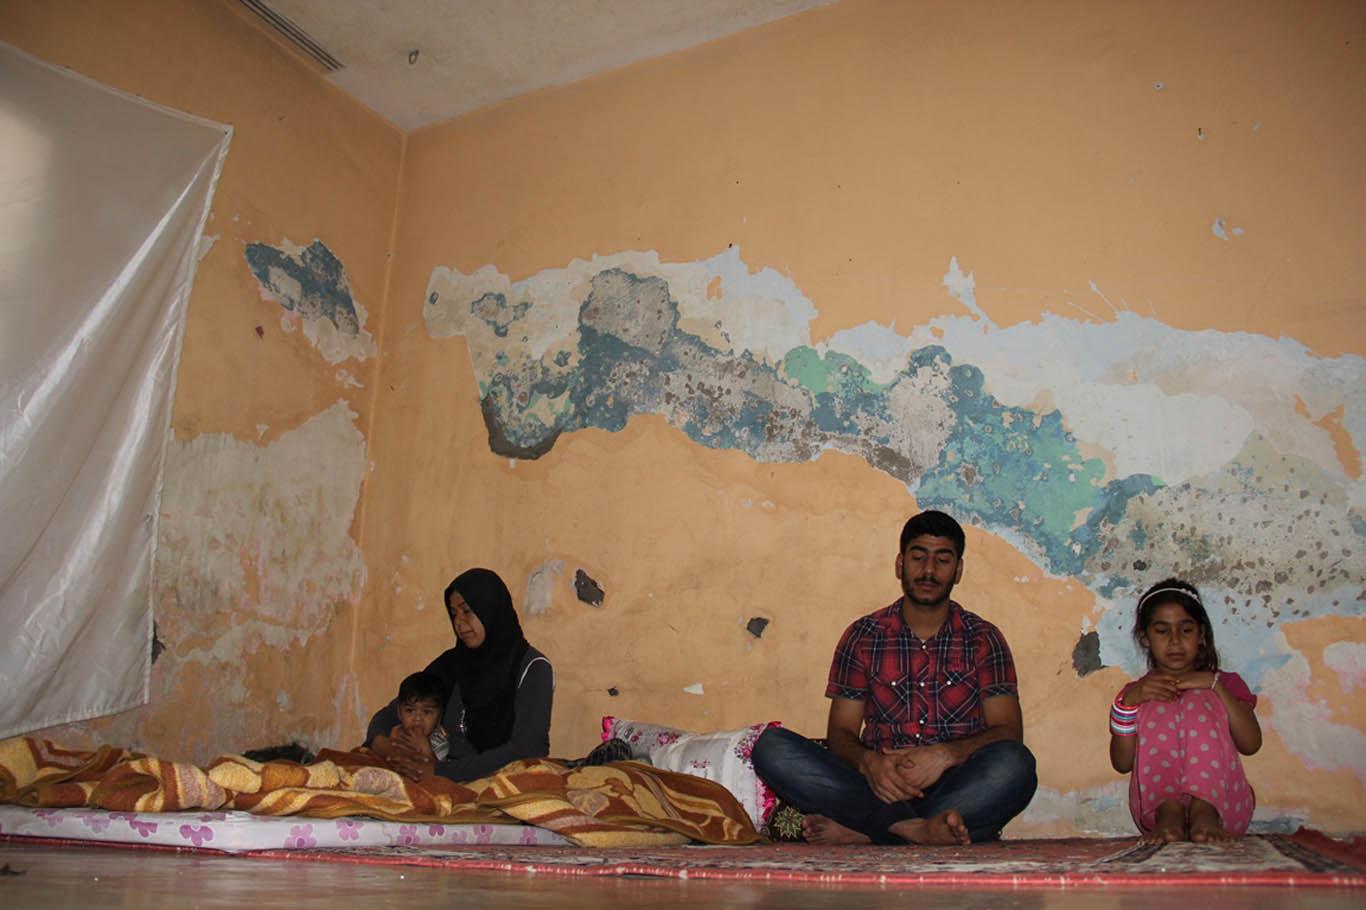 Suriyeli aile kötü şartlarda yaşam mücadelesi veriyor